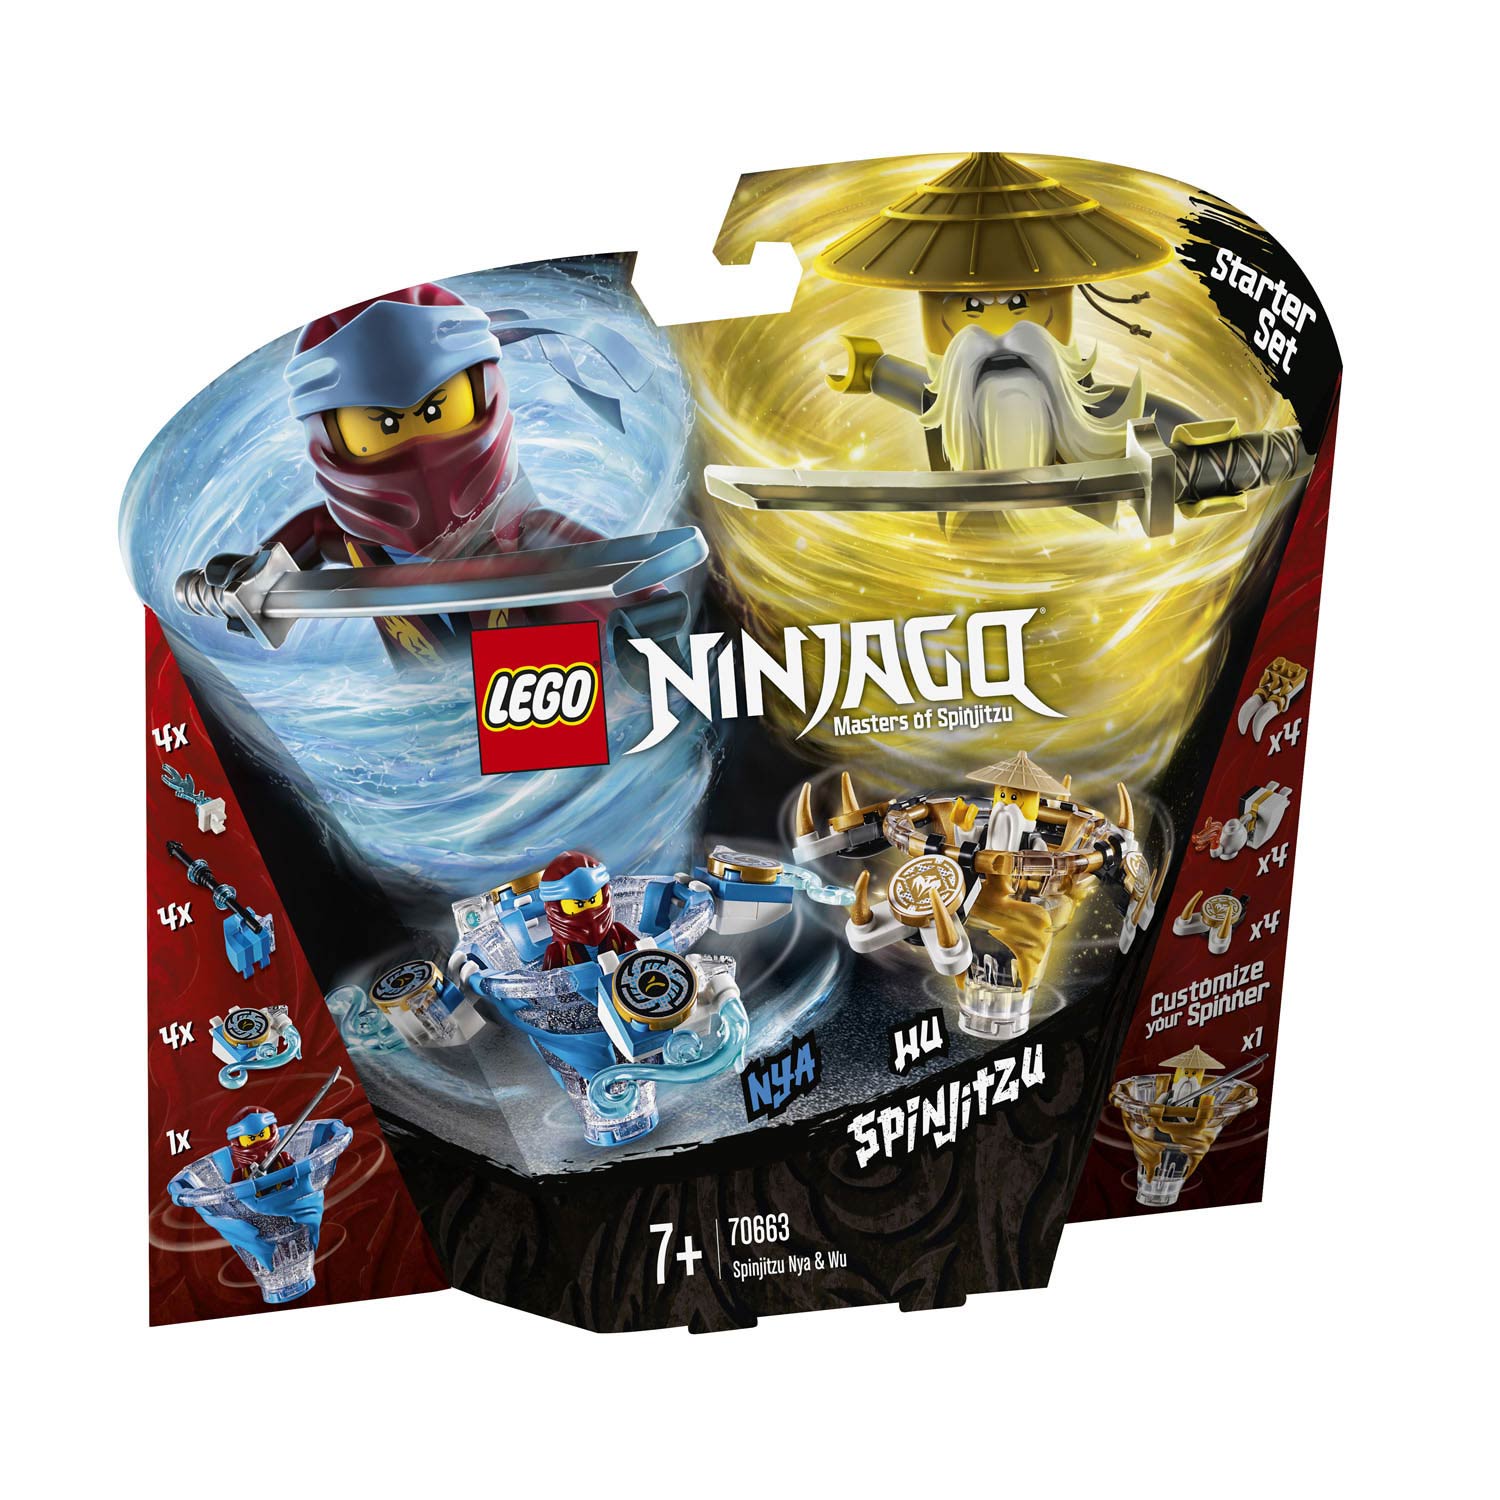 LEGO Ninjago 70663 Spinjitzu Nya & Wu